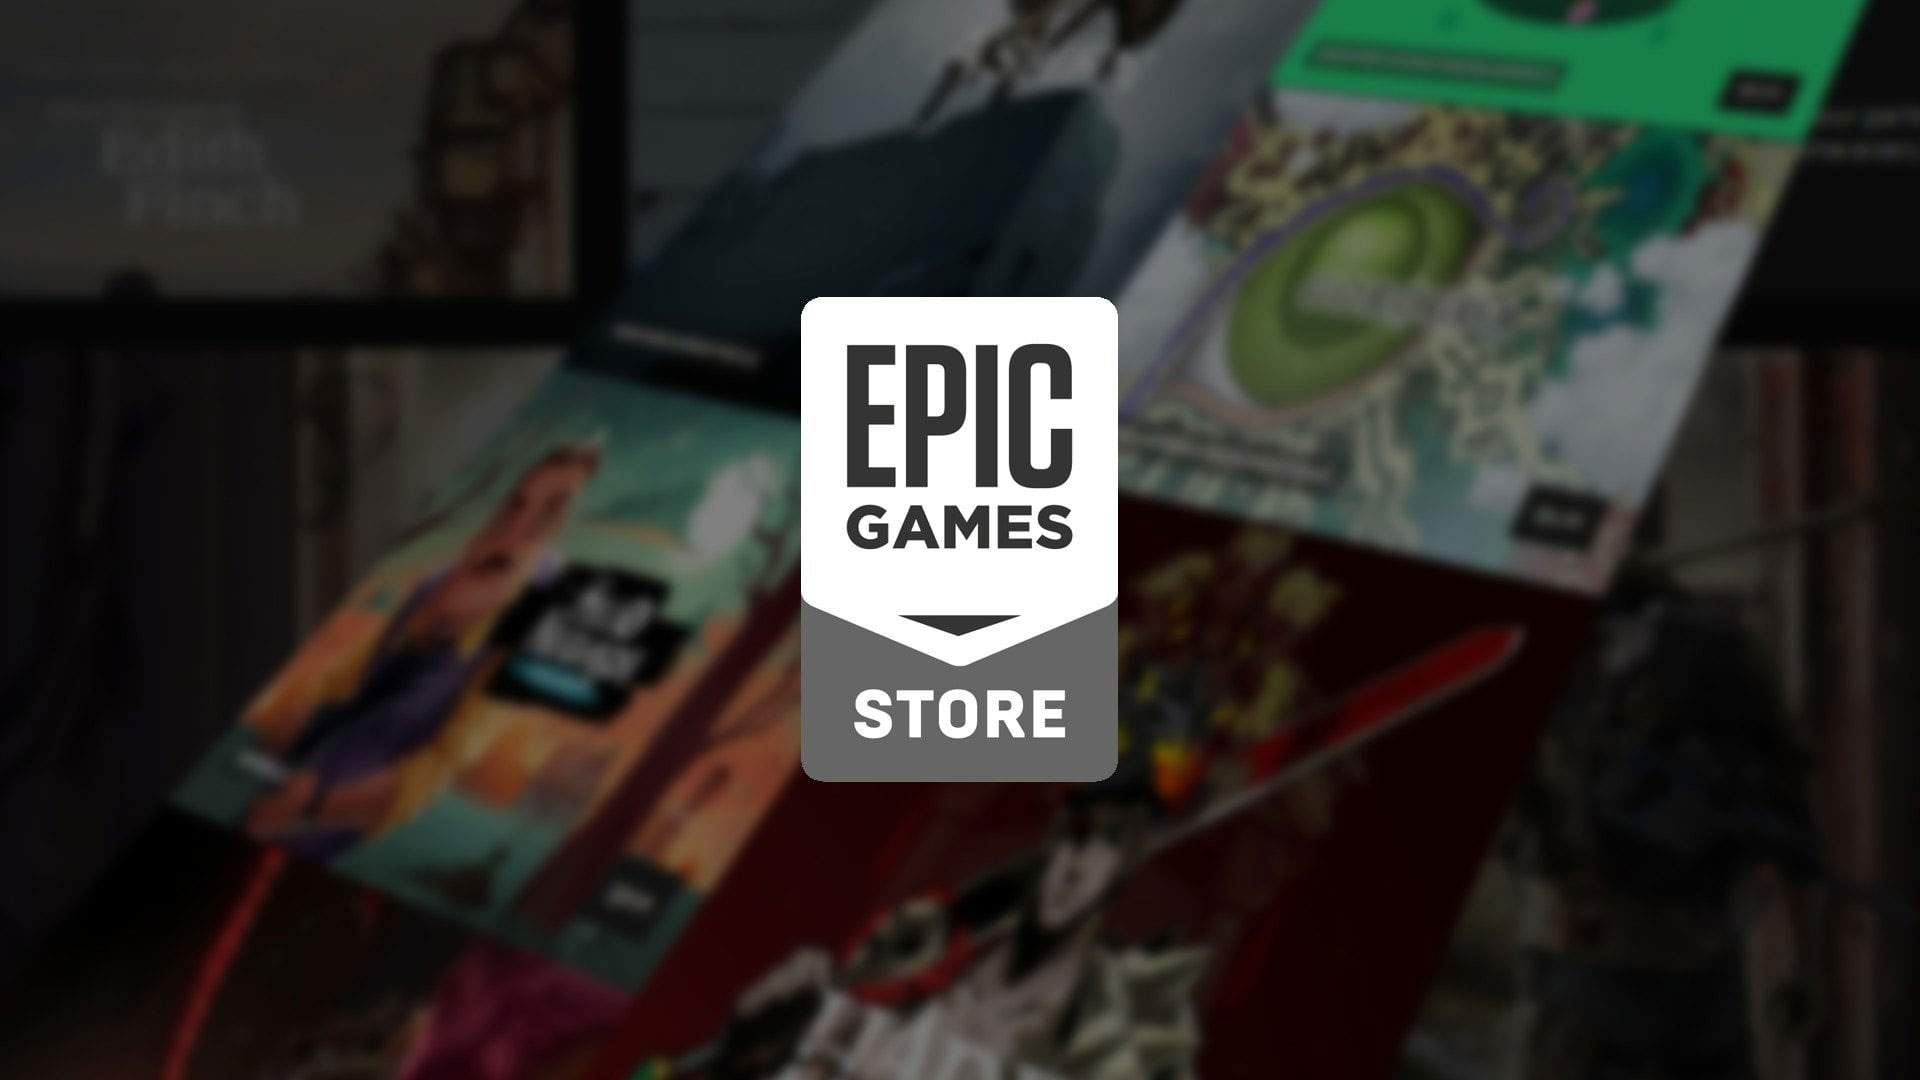 Gra za darmo w Epic Games Store. Spieszcie się odebrać świetną pozycję